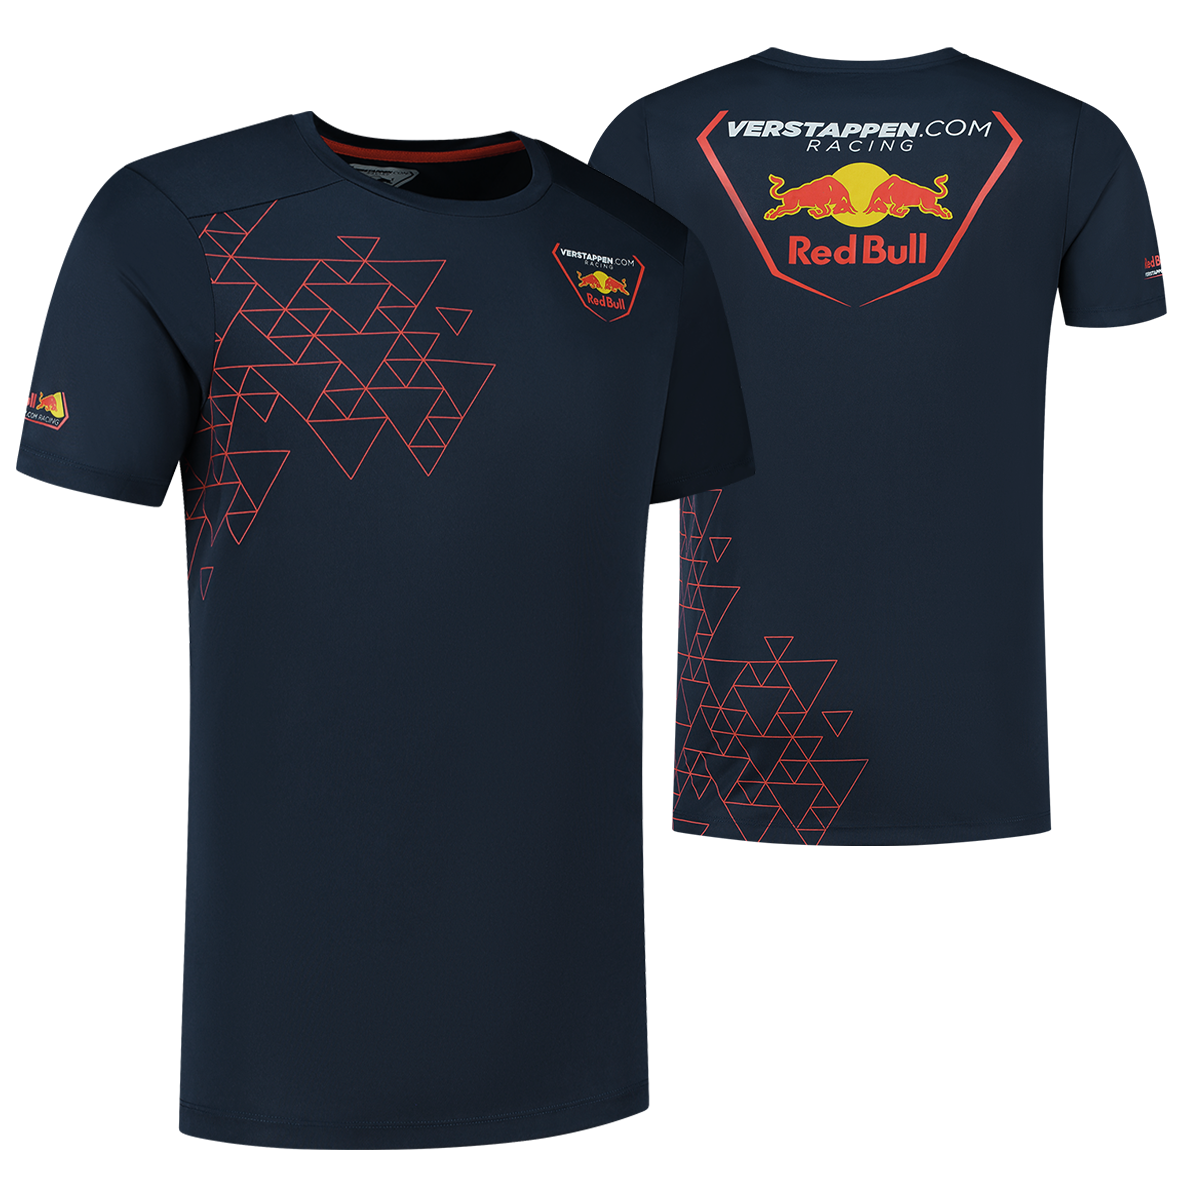 Verstappen.com Racing T-shirt - L - Max Verstappen